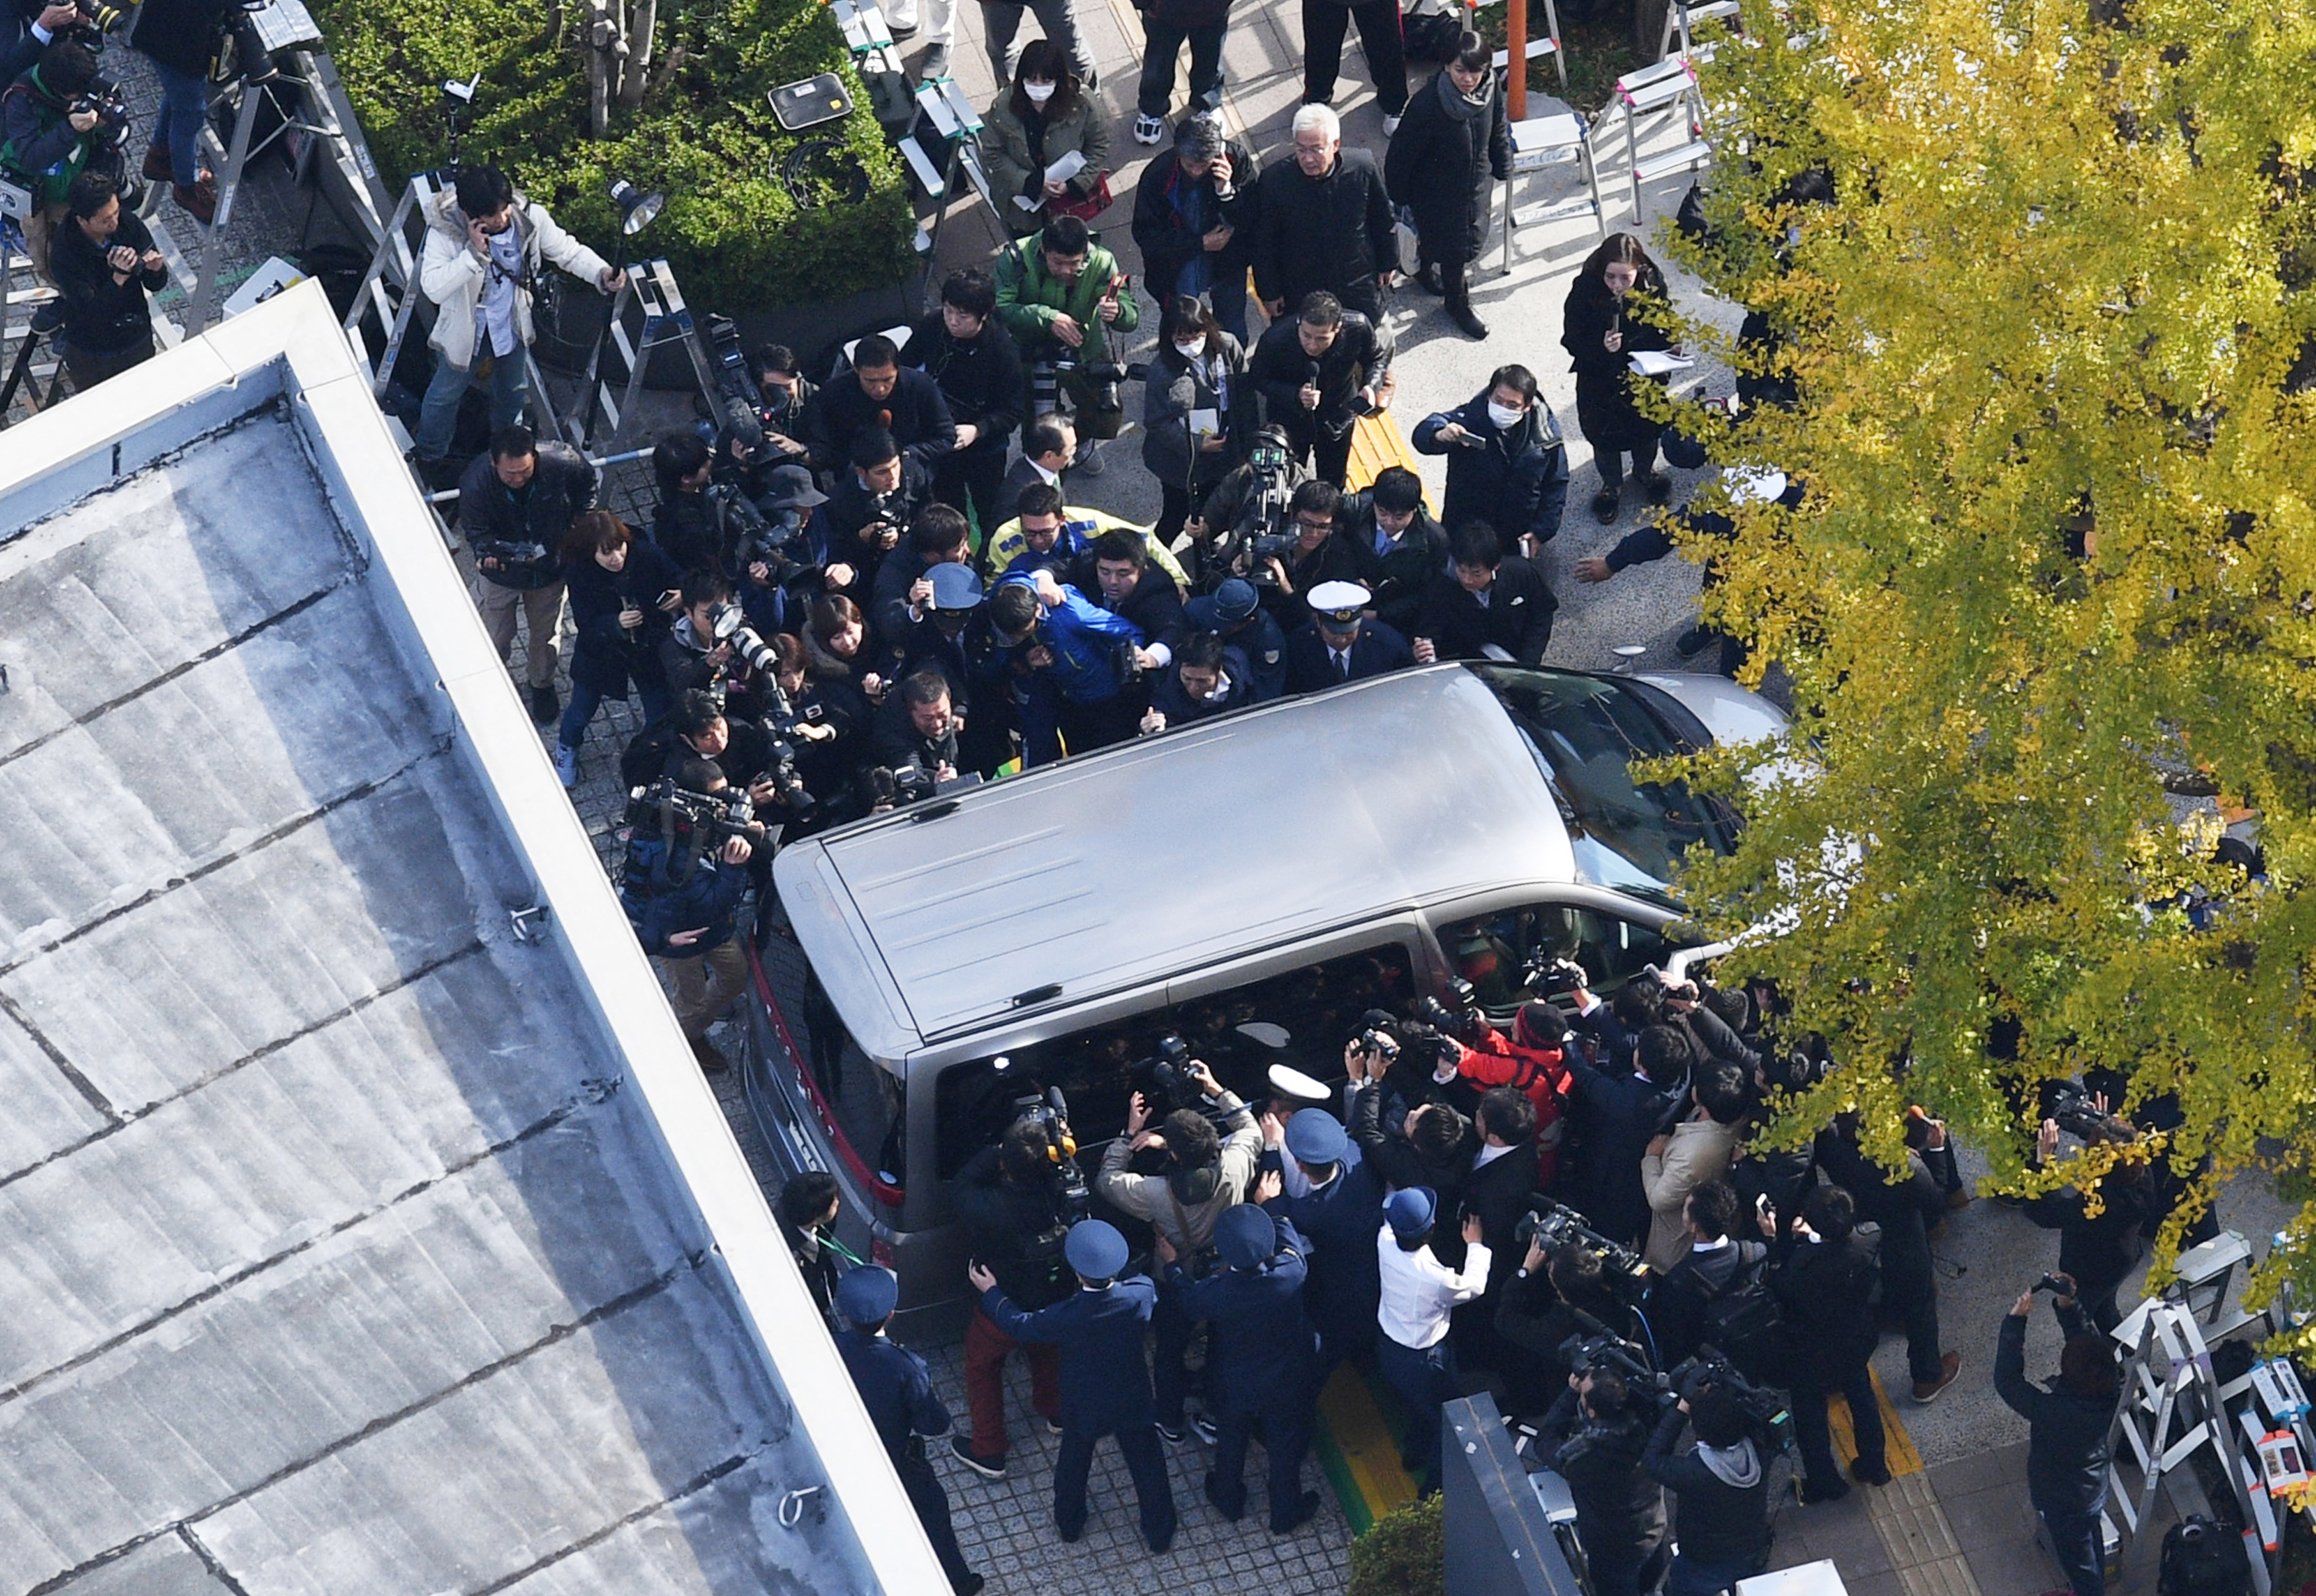 9 emberrel végzett a japán sorozatgyilkos, most megtalálták az áldozatok fejeit a hűtőjében